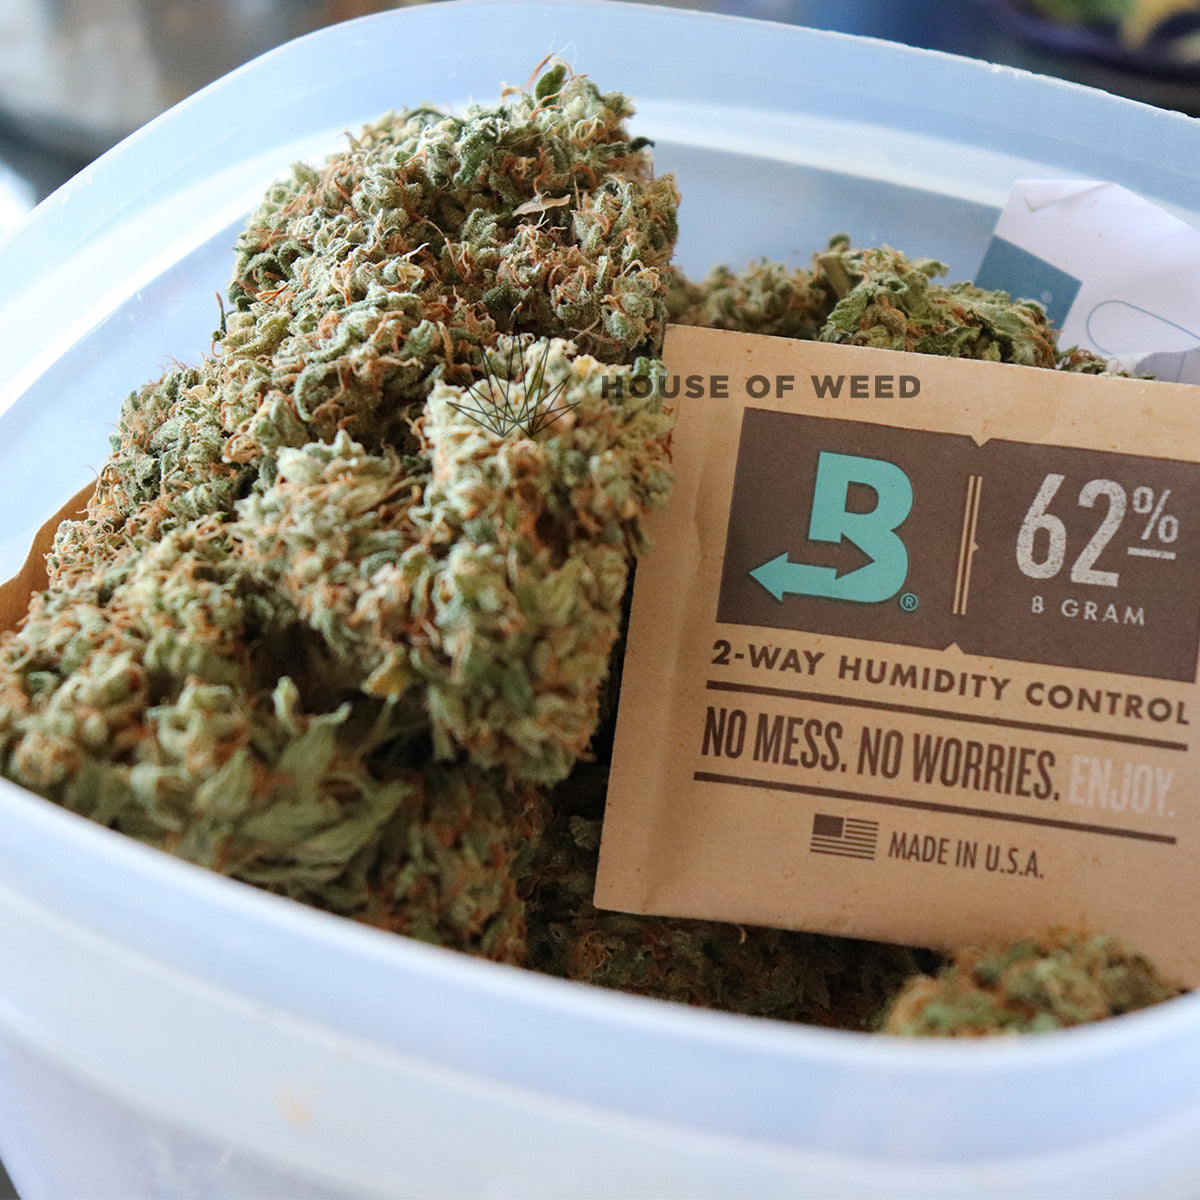 sobre de humedad para el curado de marihuana bóveda 8g 62% house of weed tienda online 